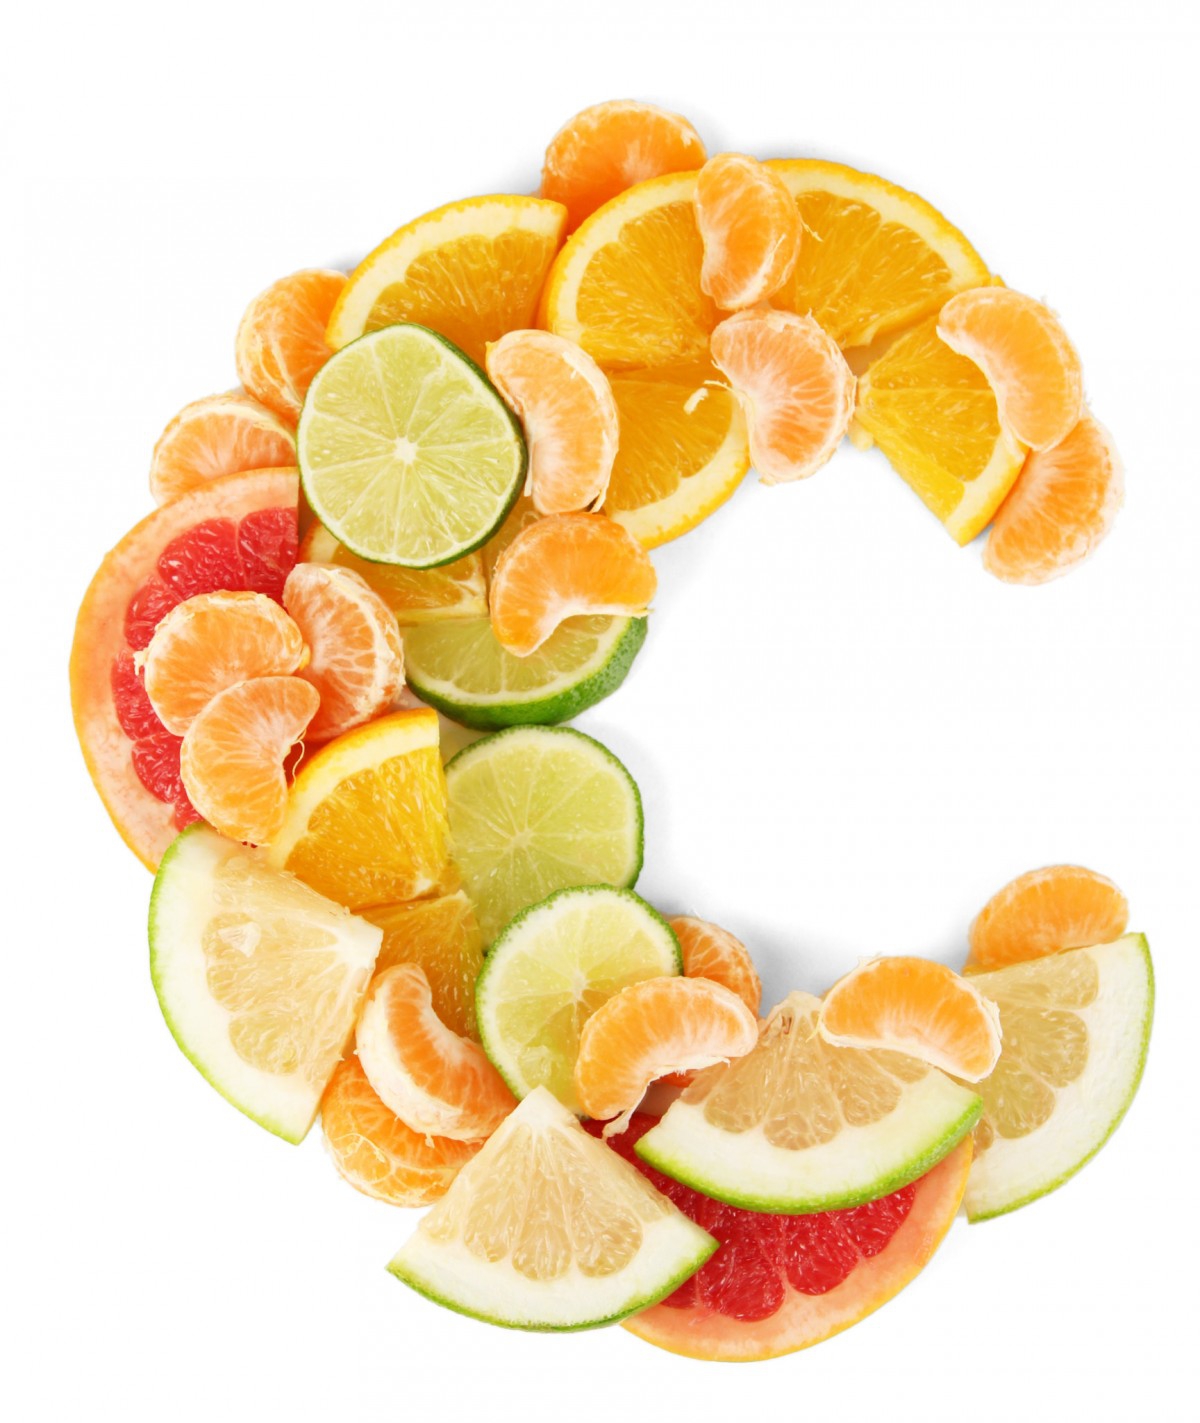 Cách sử dụng collagen và vitamin C để có hiệu quả nhất?
